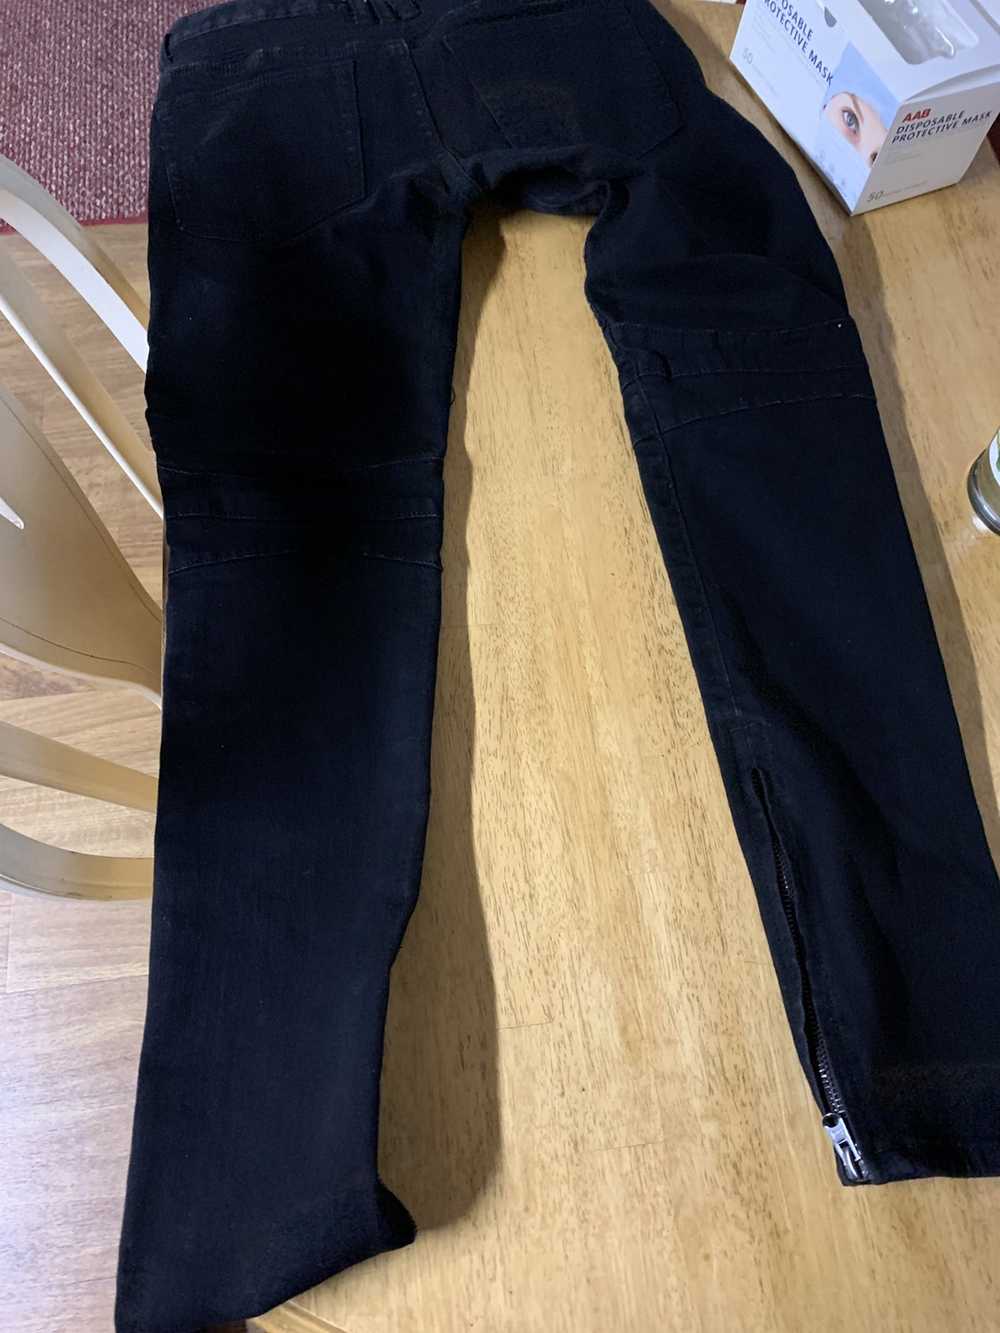 MNML Mnml black jeans size 31 - image 1